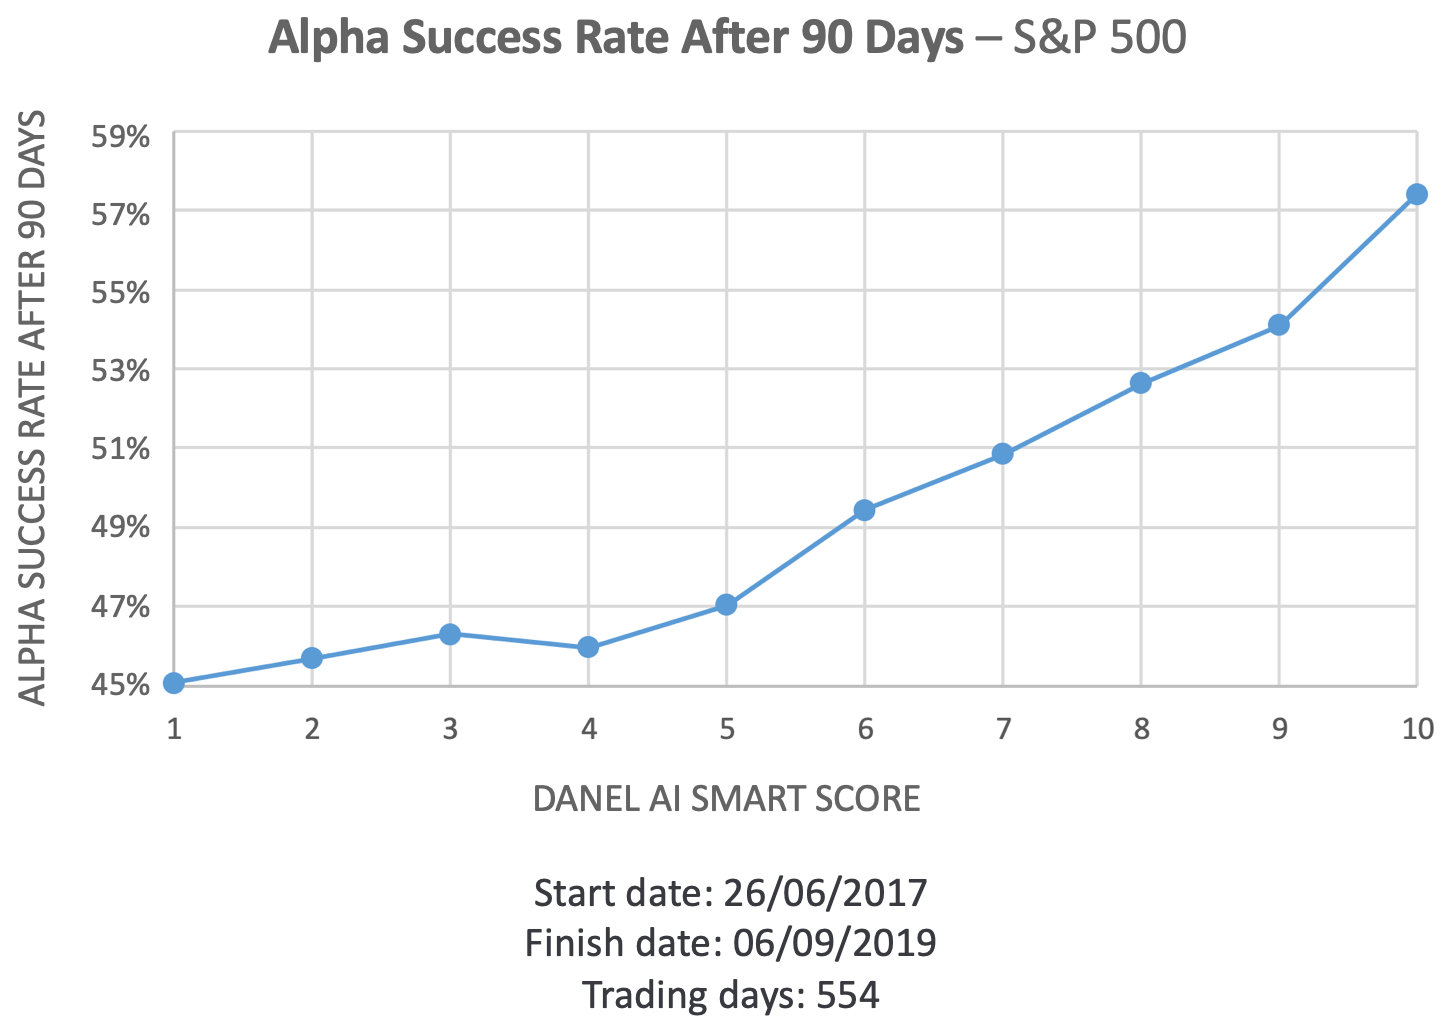 Danel AI Score Alpha Success Rate After 90 Days